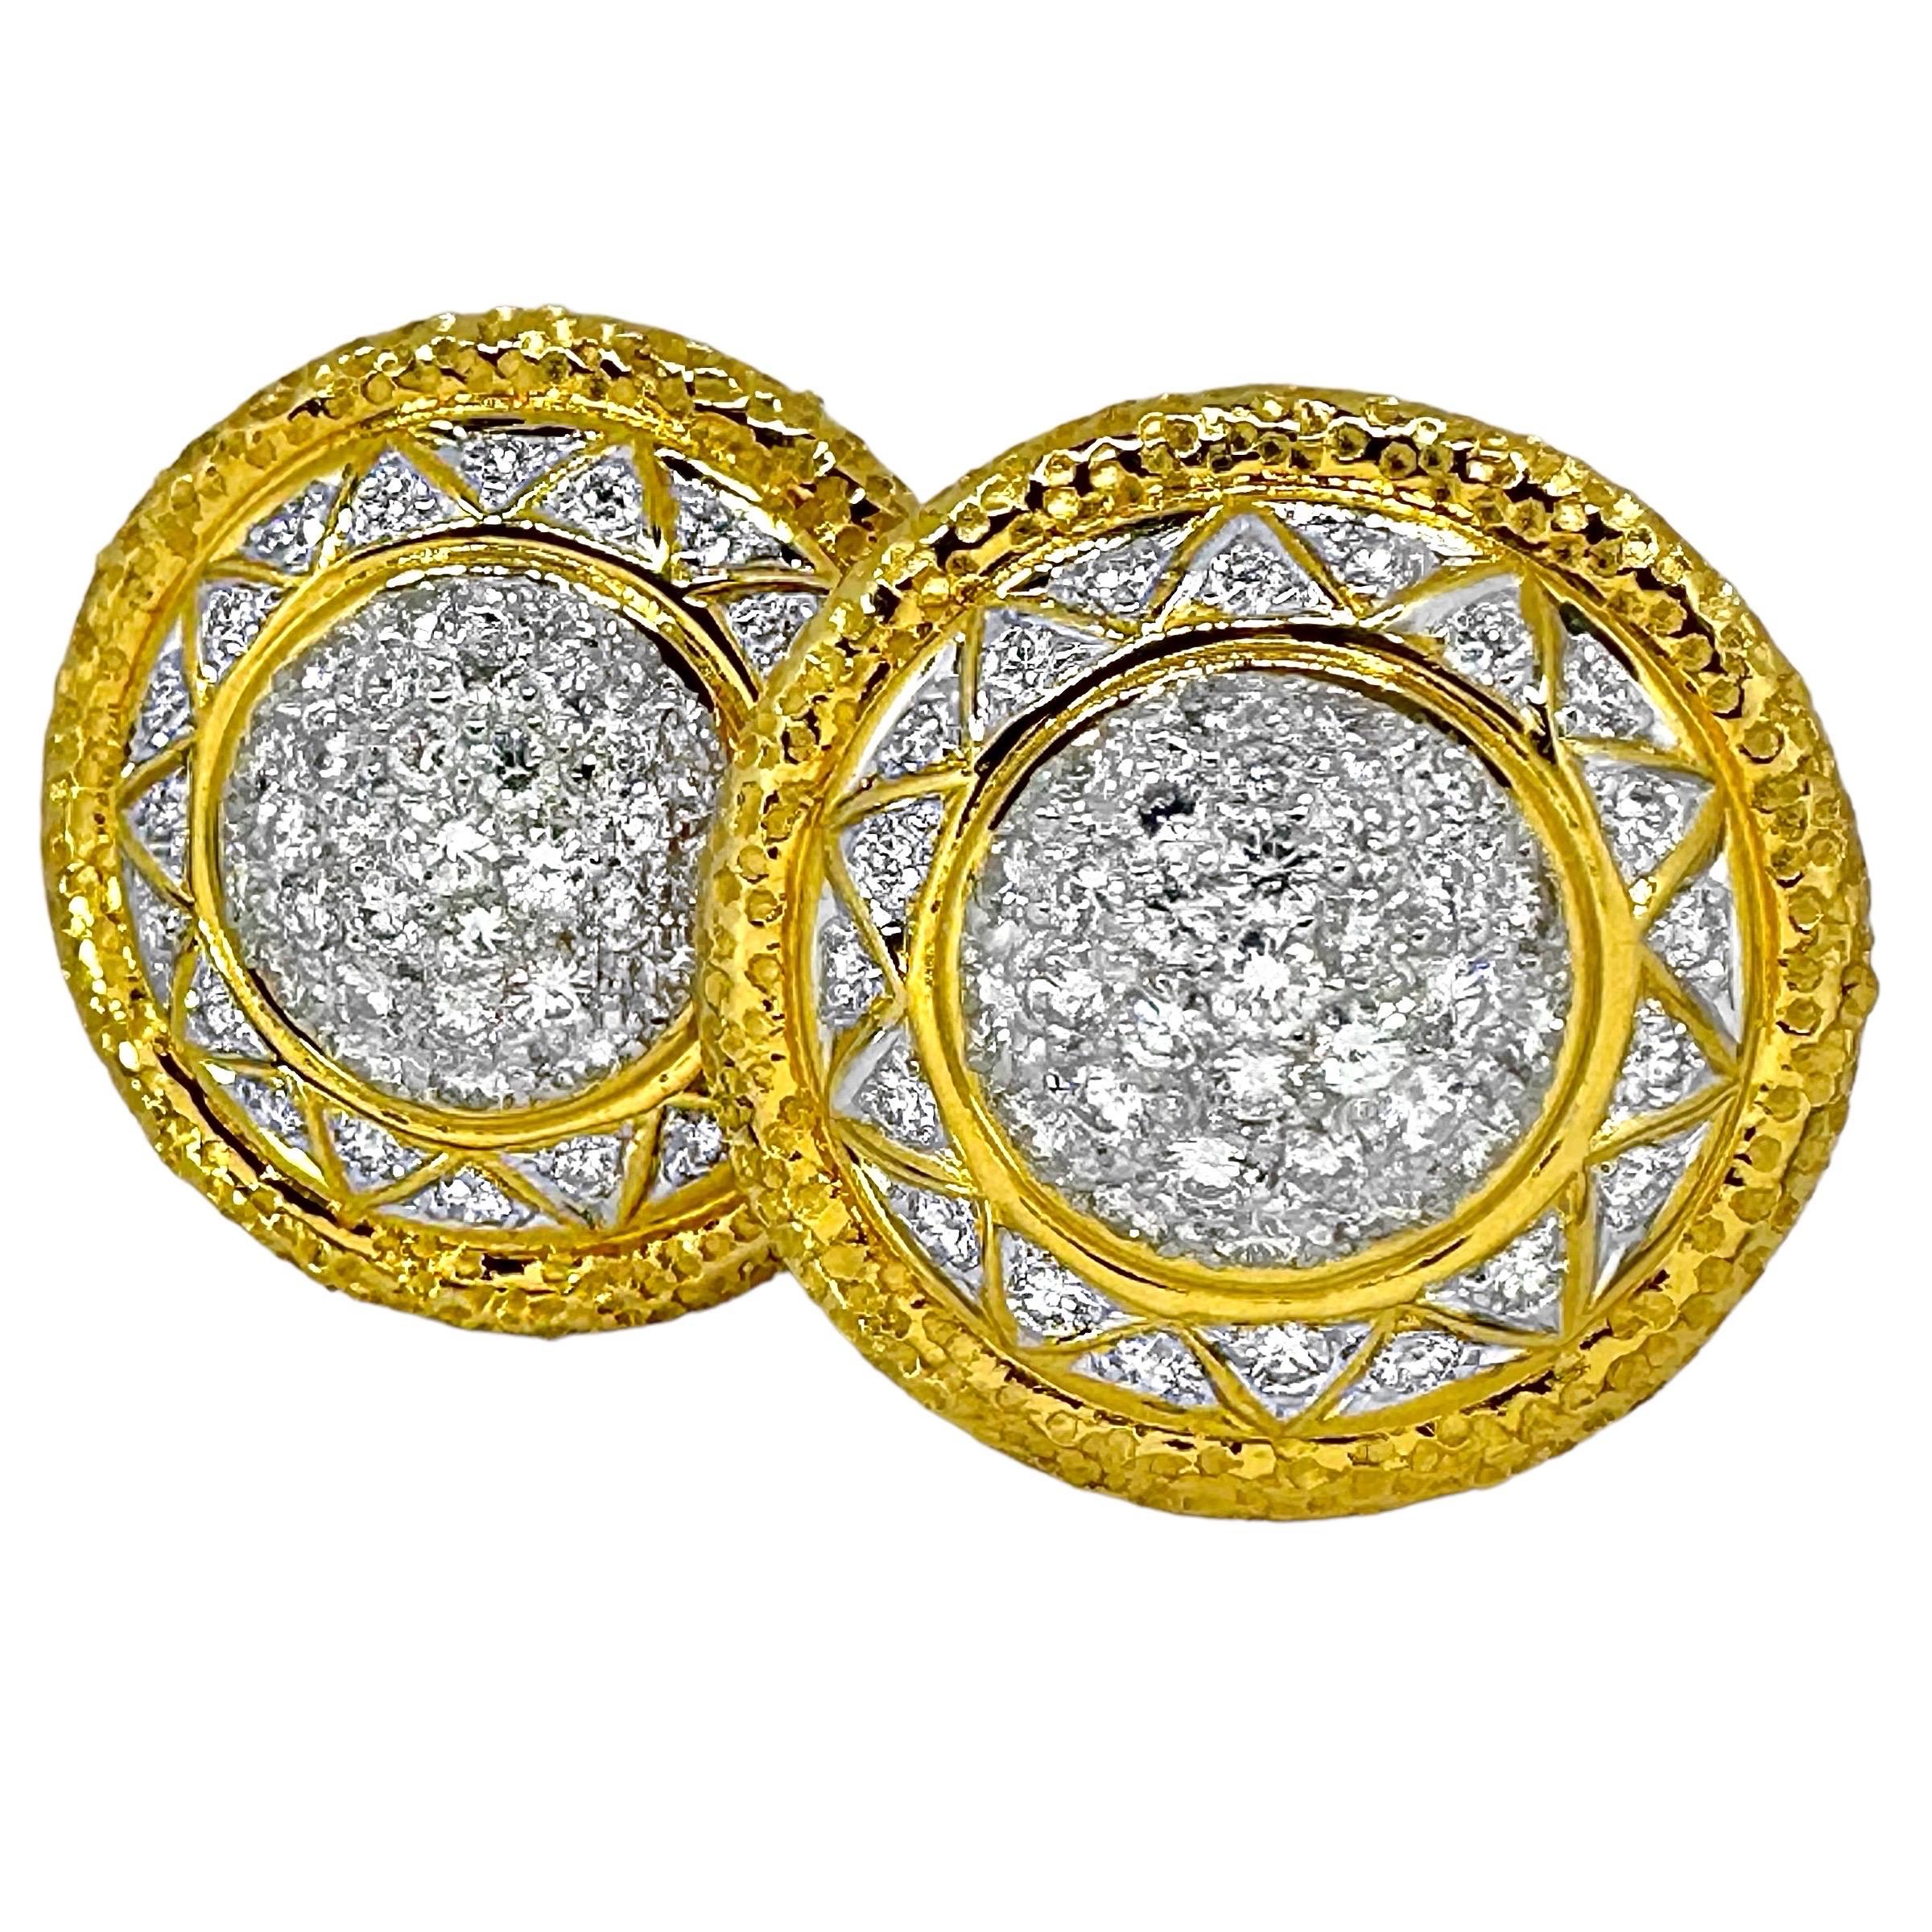 Boucles d'oreilles dôme en or et diamants incrustés, 18K Tailoring, 7/8 pouces de diamètre